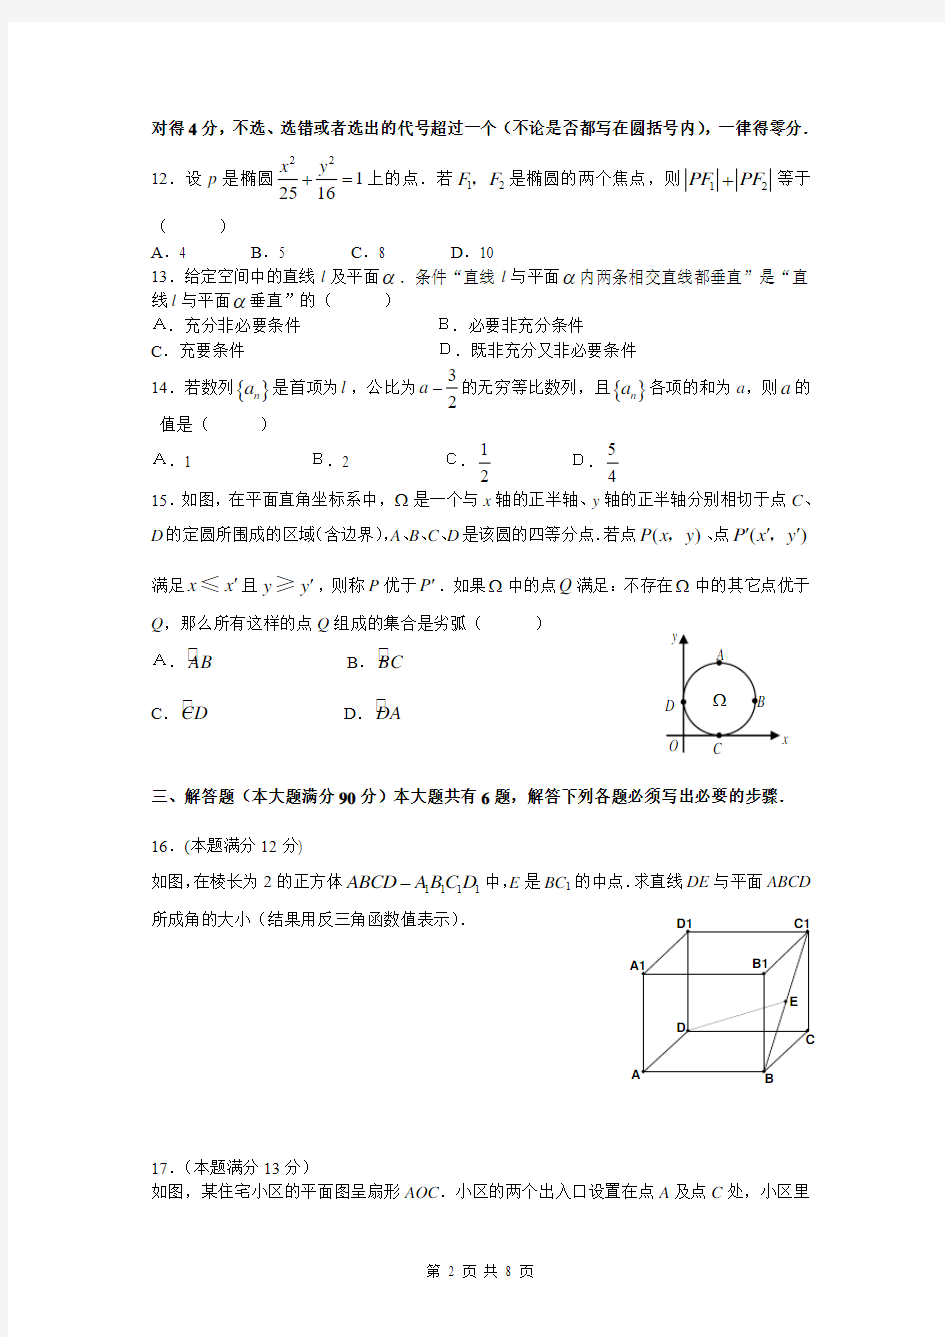 2008年普通高等学校招生全国统一考试上海卷   数学(文史类)